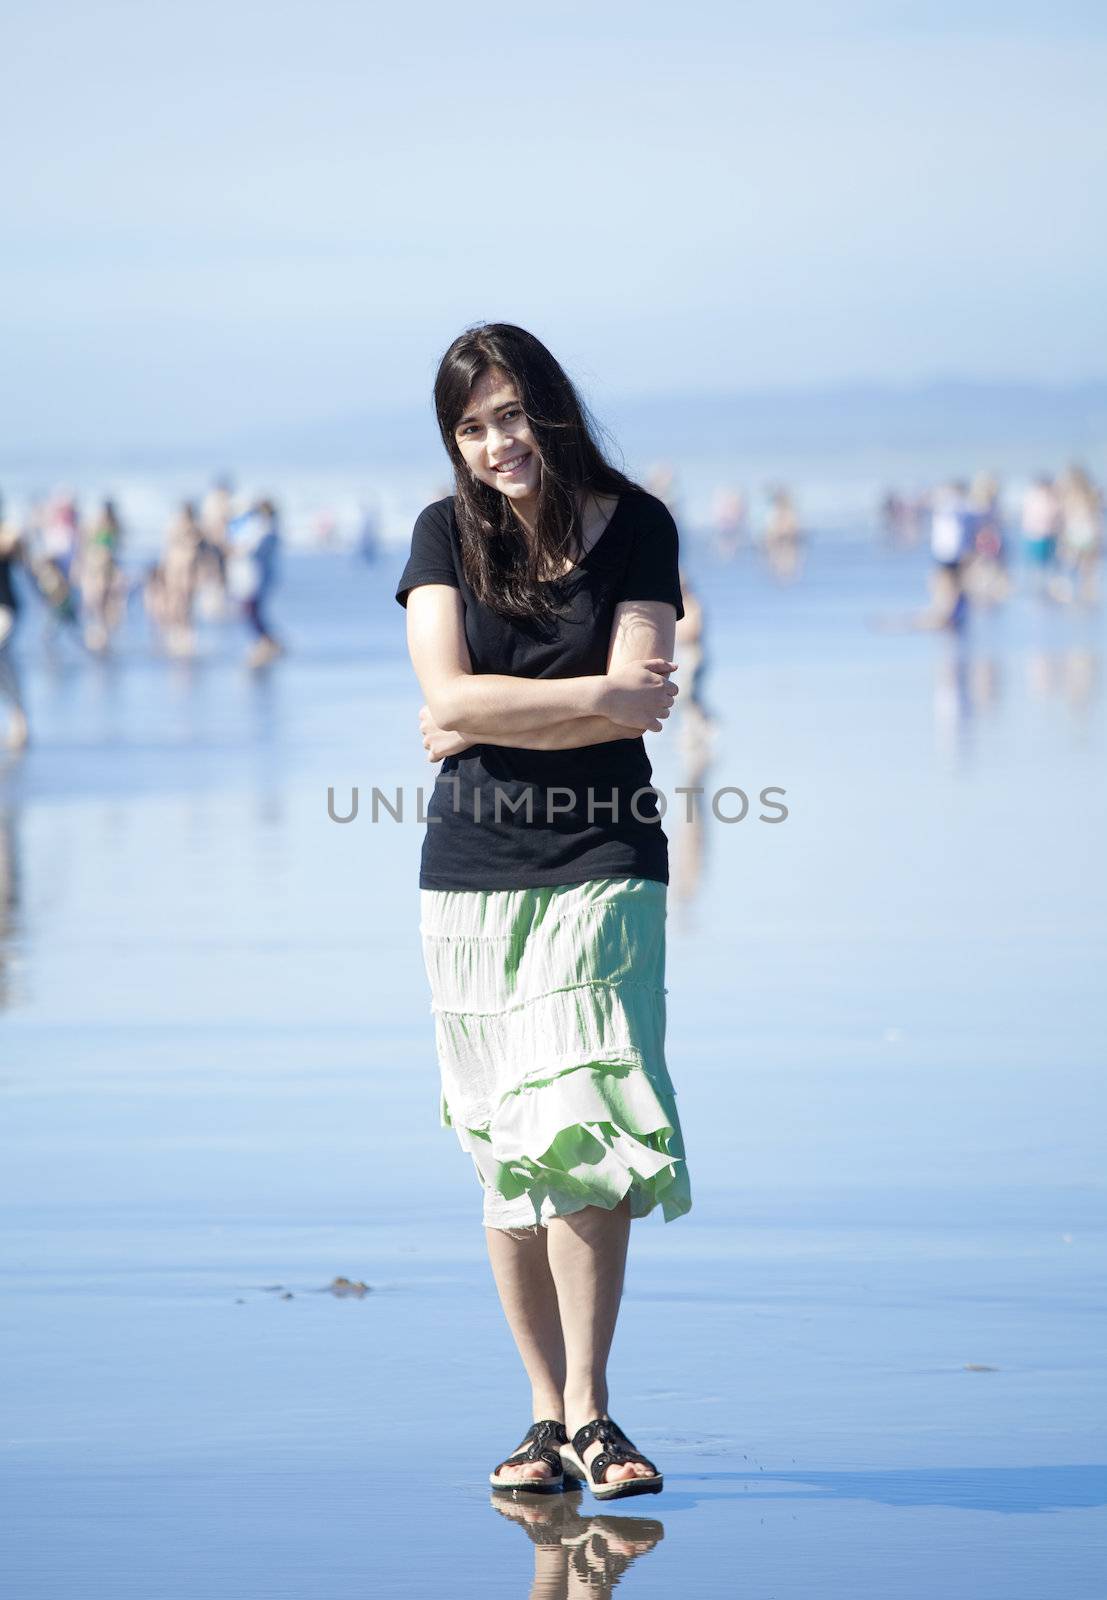 Beautiful biracial young woman or teen enjoying walk along beach by Pacific Ocean